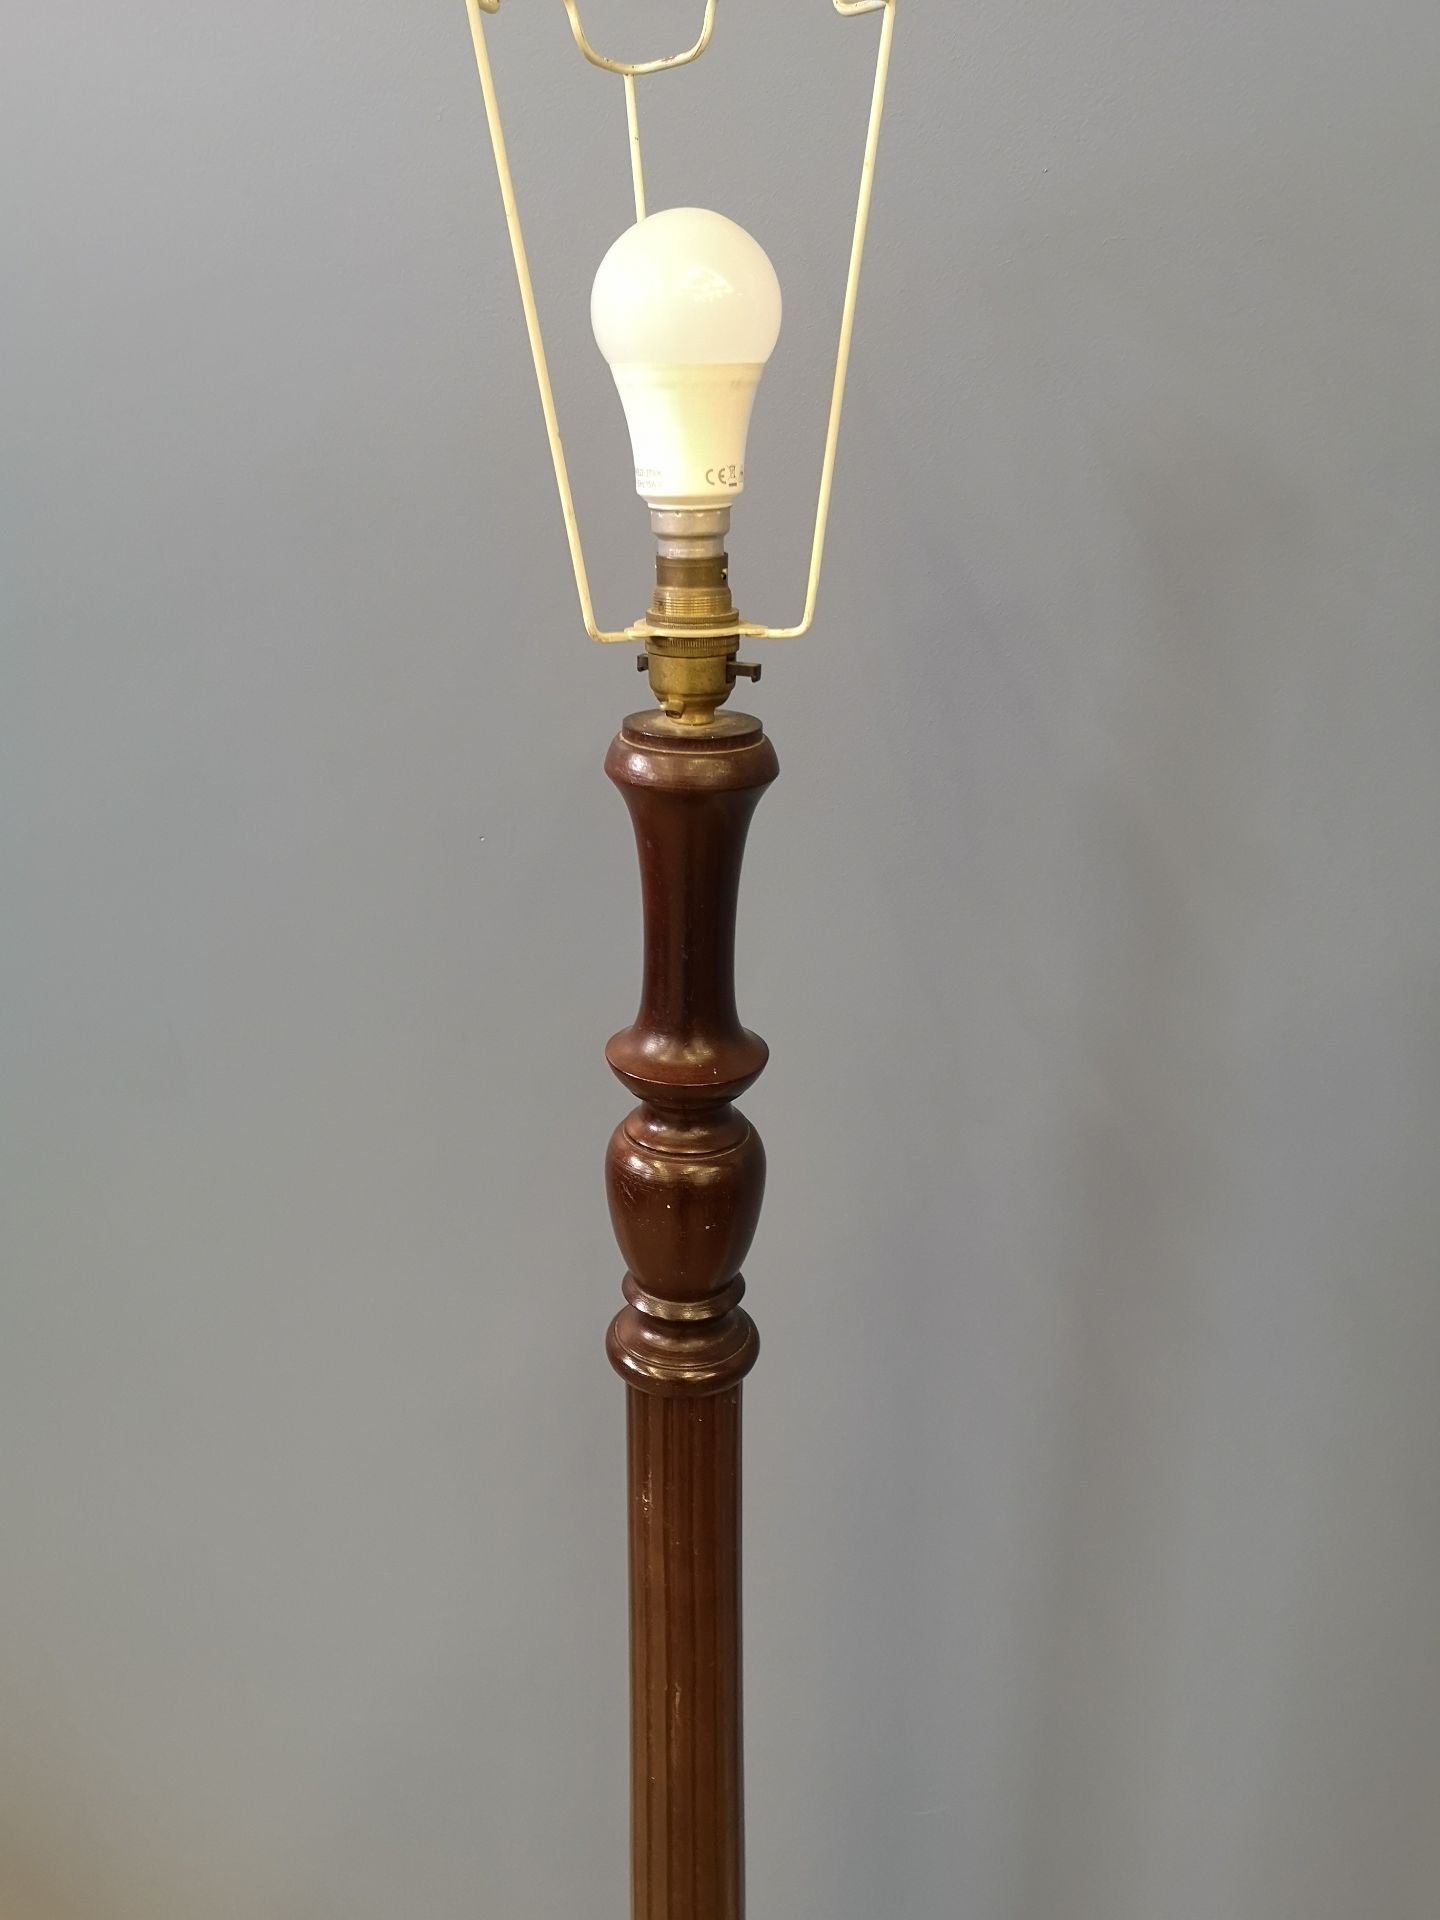 Mahogany standard lamp - Image 2 of 4